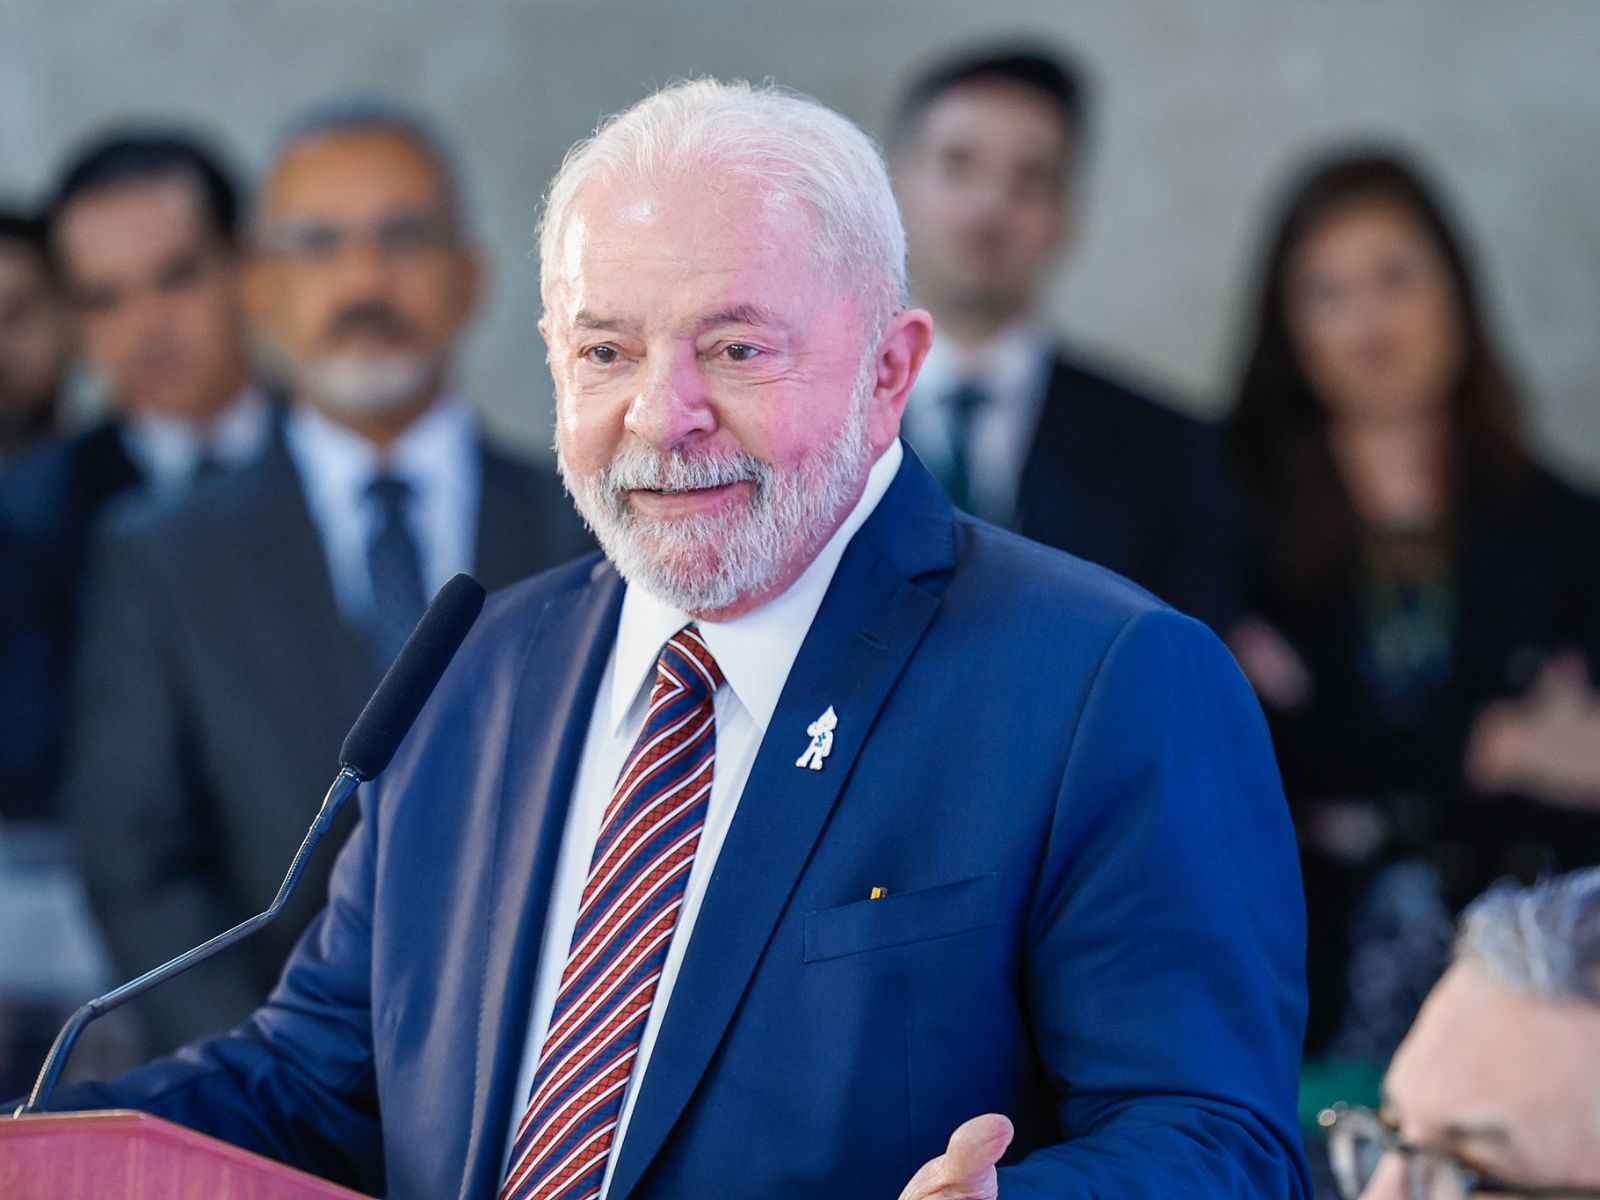 Lula é eleito uma das 100 pessoas mais influentes de 2023 pela revista Time